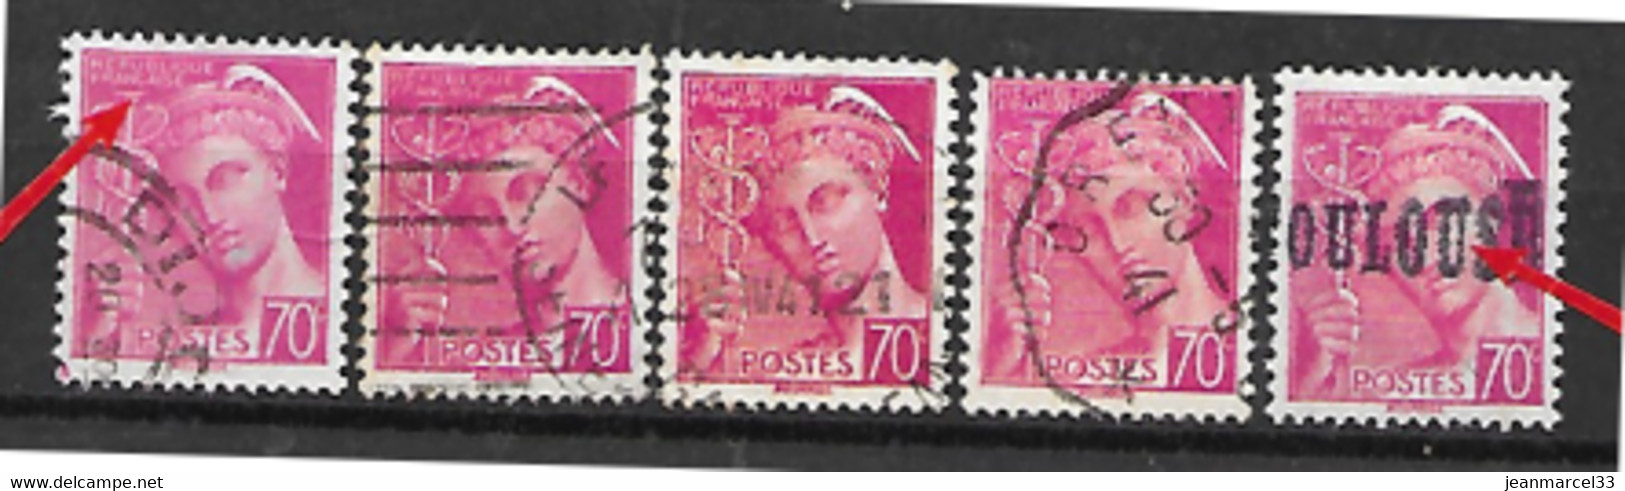 Vafiétès Lot De 9 Timbres N° 416, 70c Mercure Lilas Rose, République Française Male Imprimée Cadre Brisé Ou Non Existant - Used Stamps